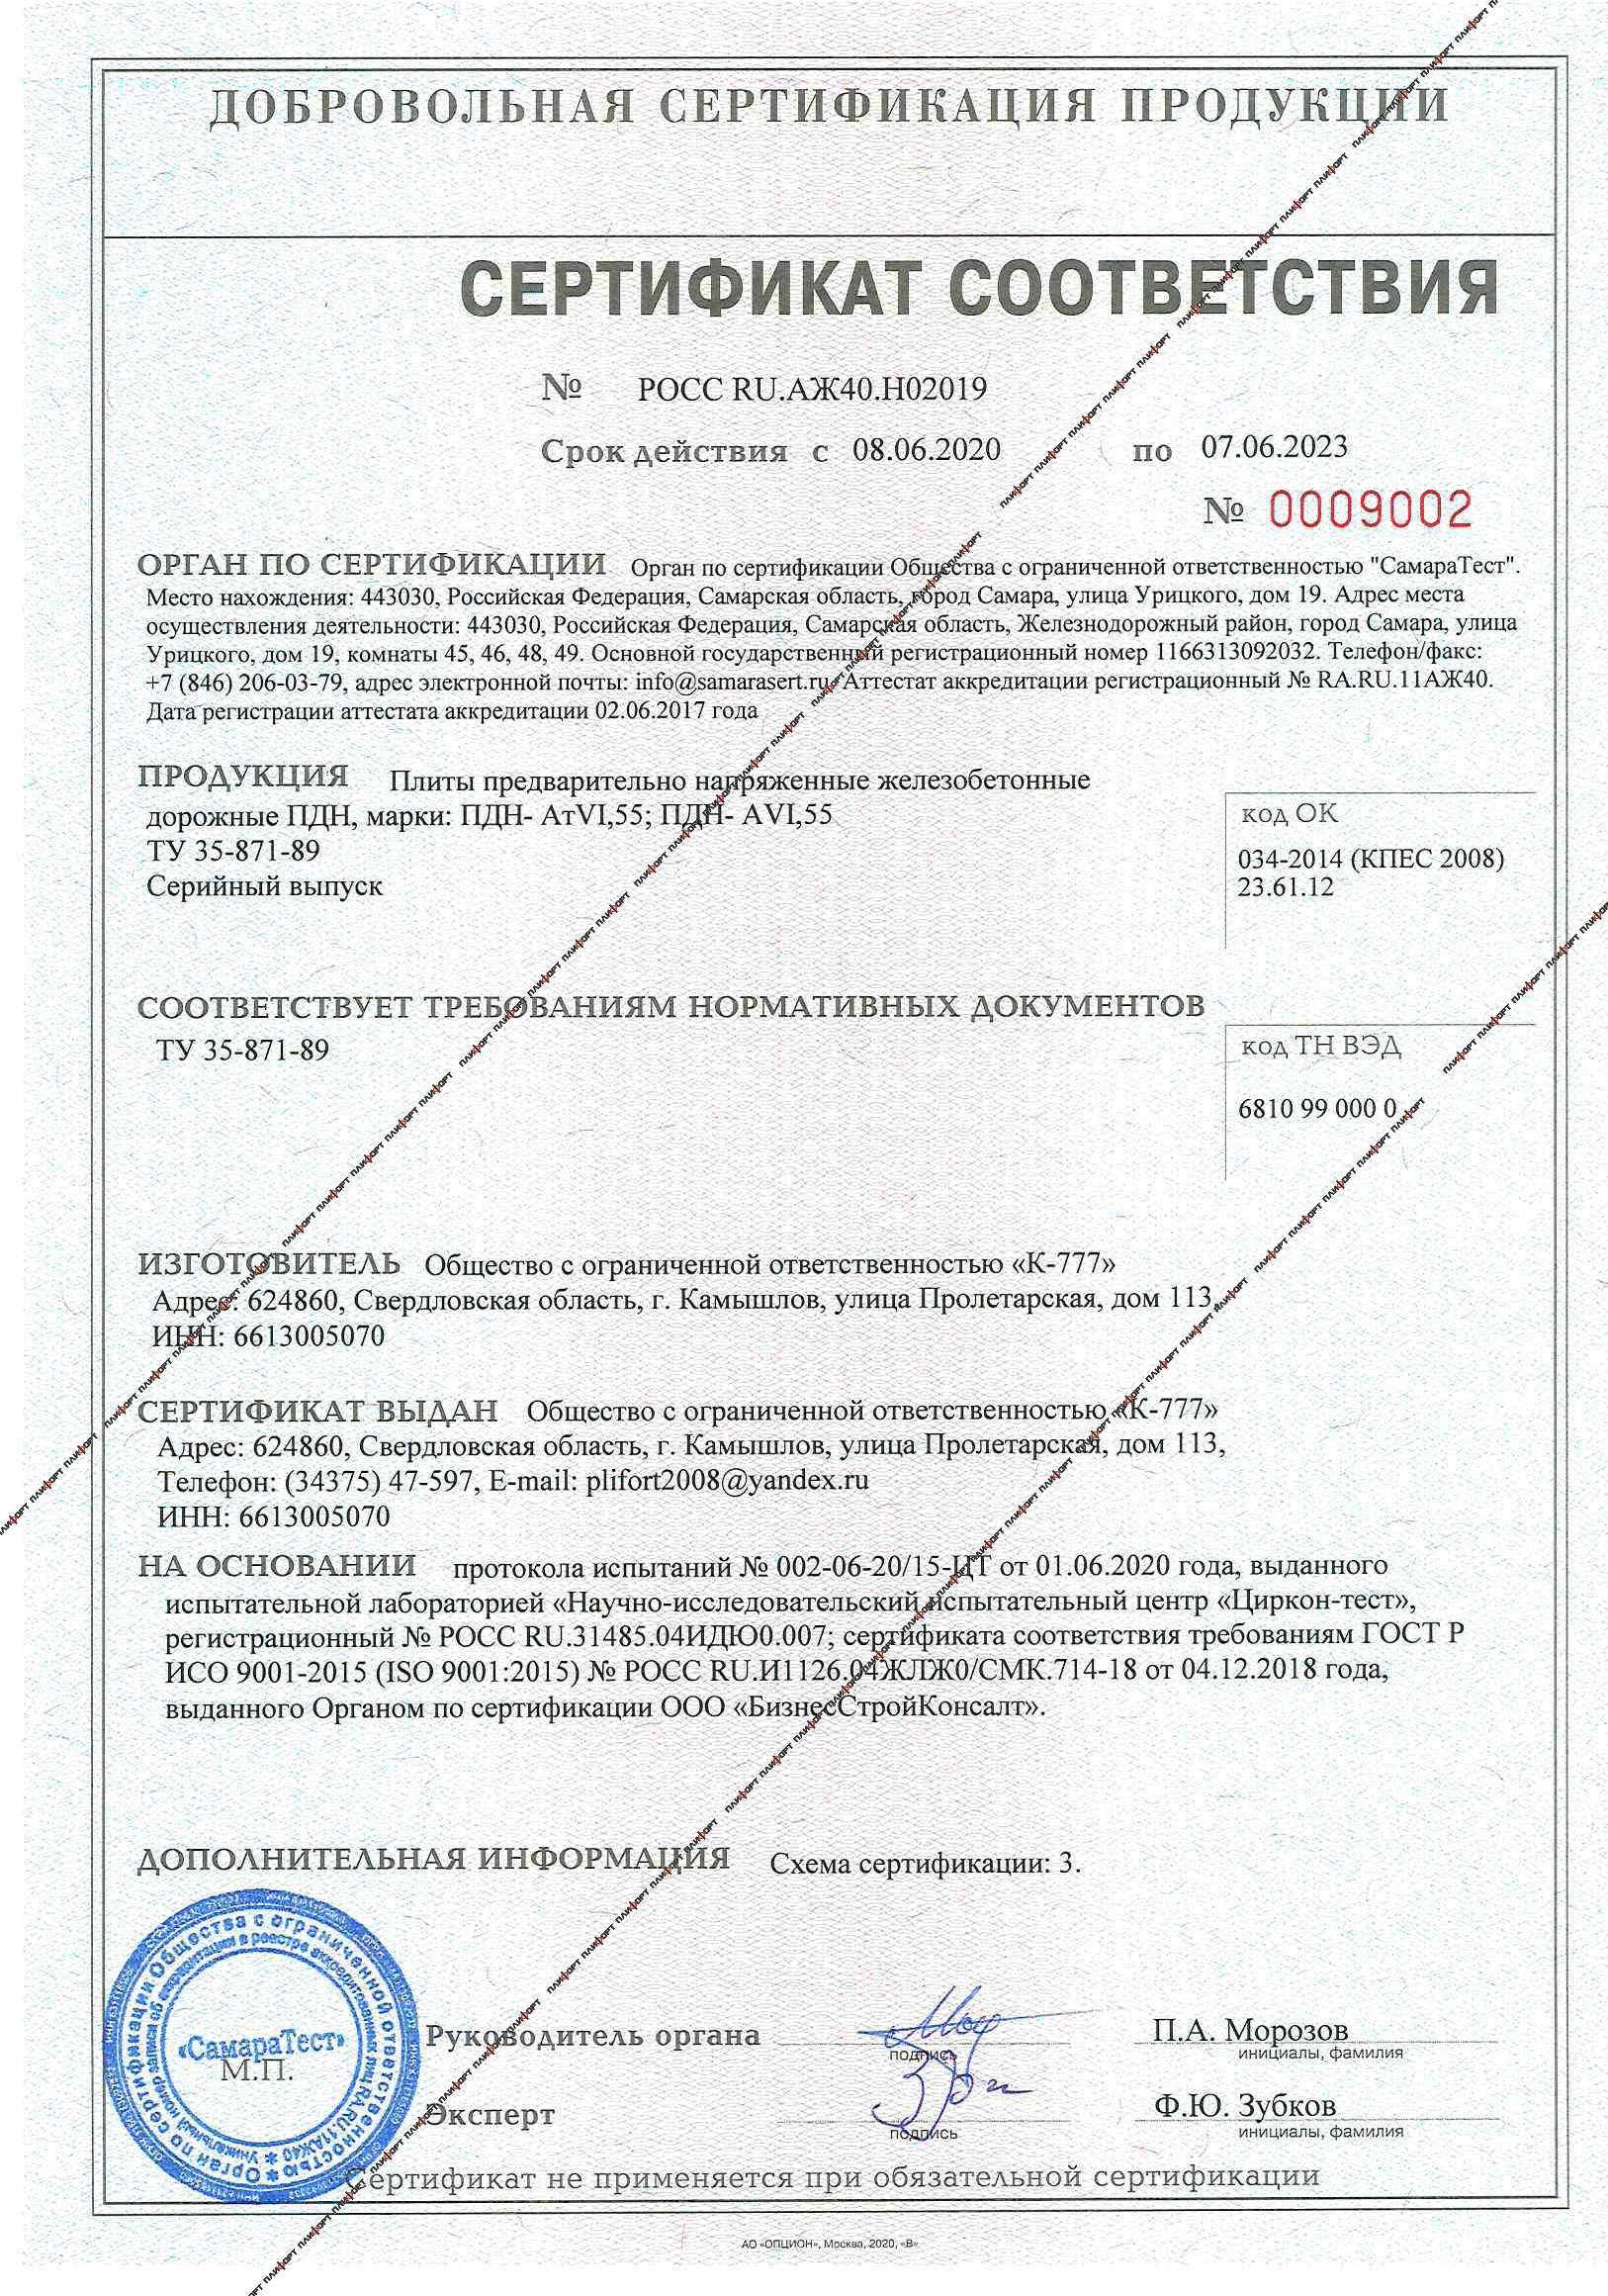 Сертификат на плиты ПДН-АтVI